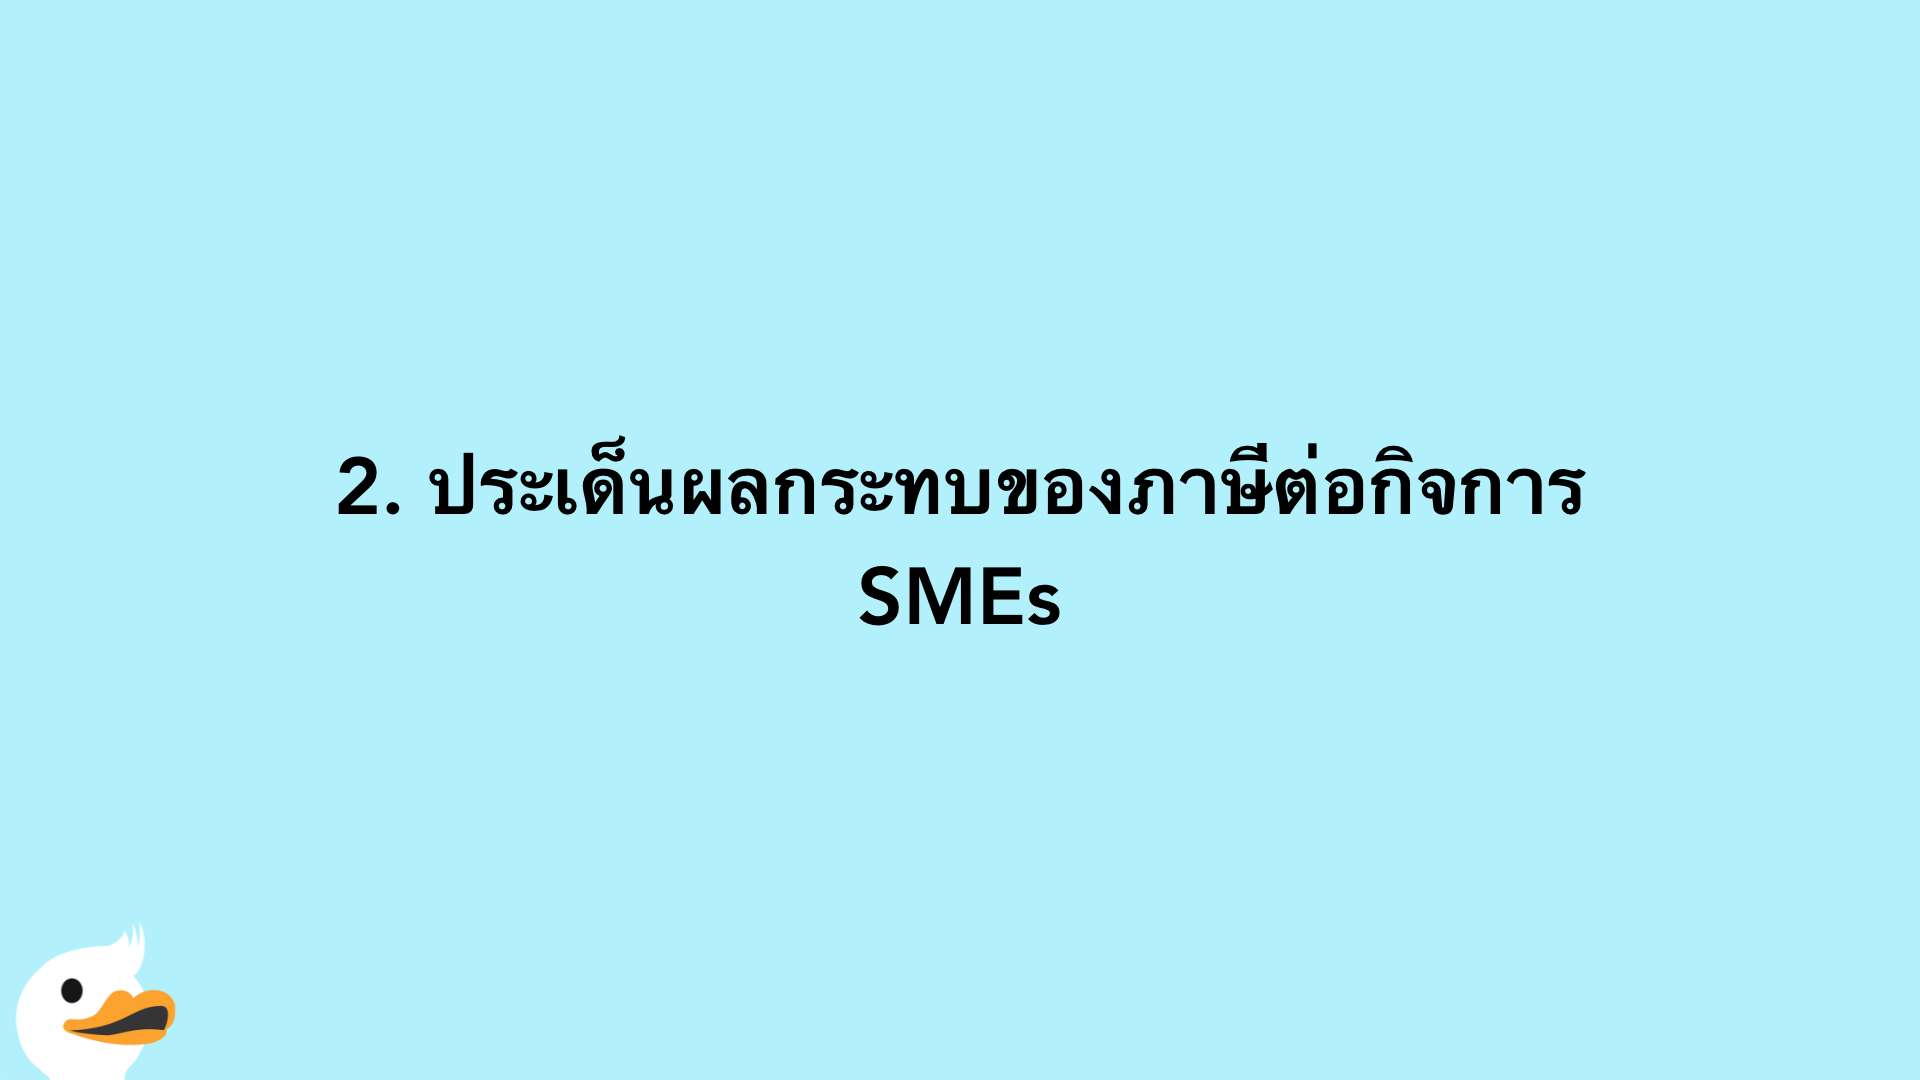 2. ประเด็นผลกระทบของภาษีต่อกิจการ SMEs